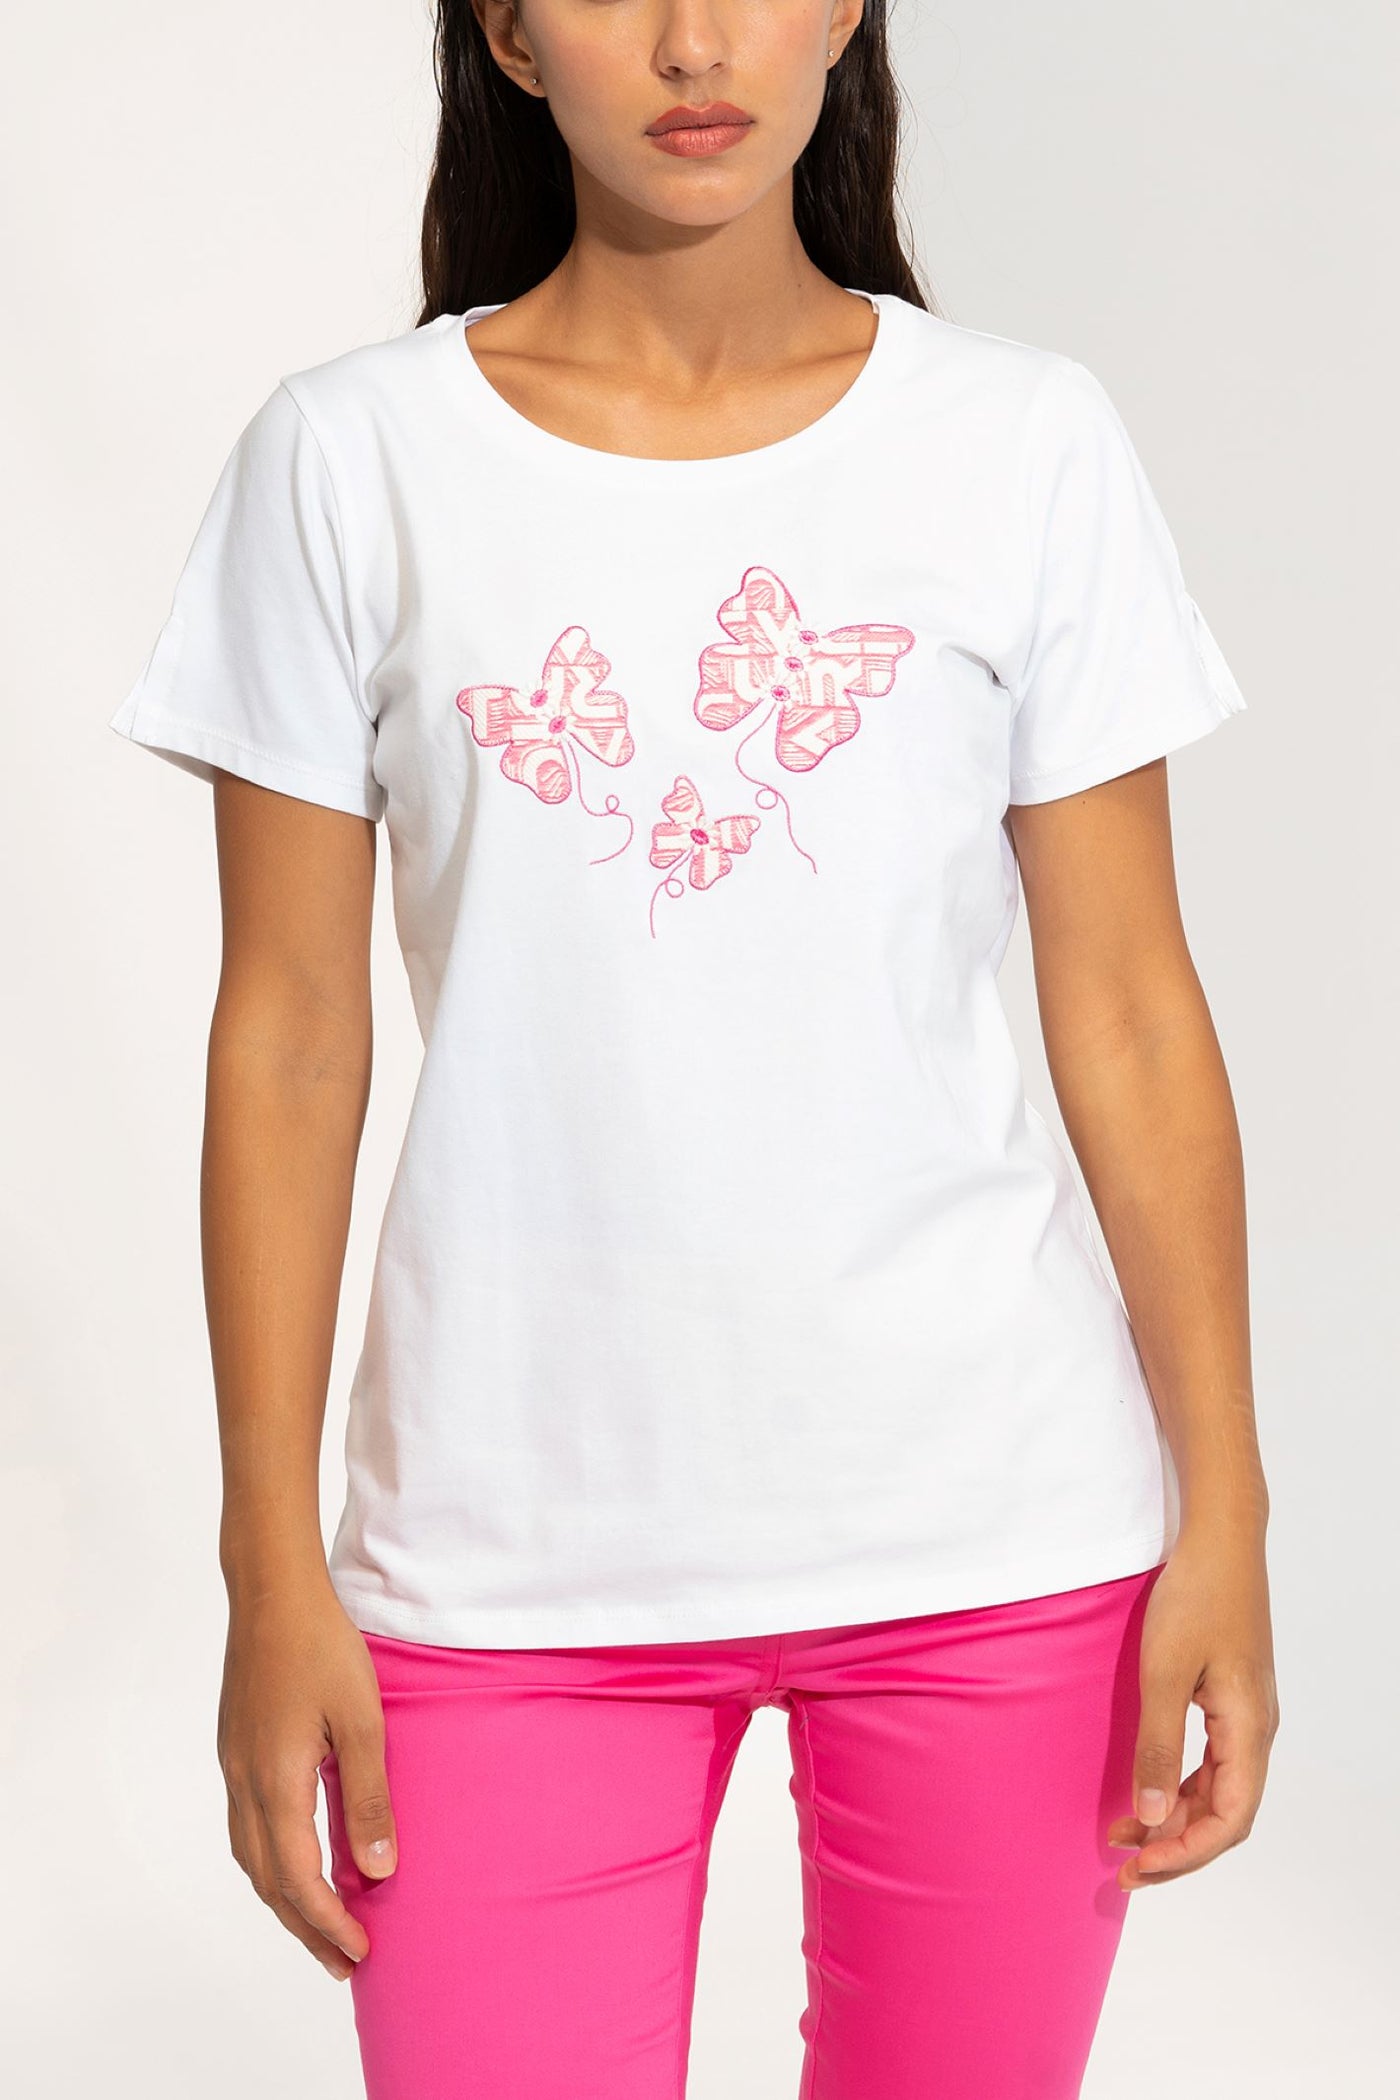 Bariloche Taiga White and Pink T Shirt